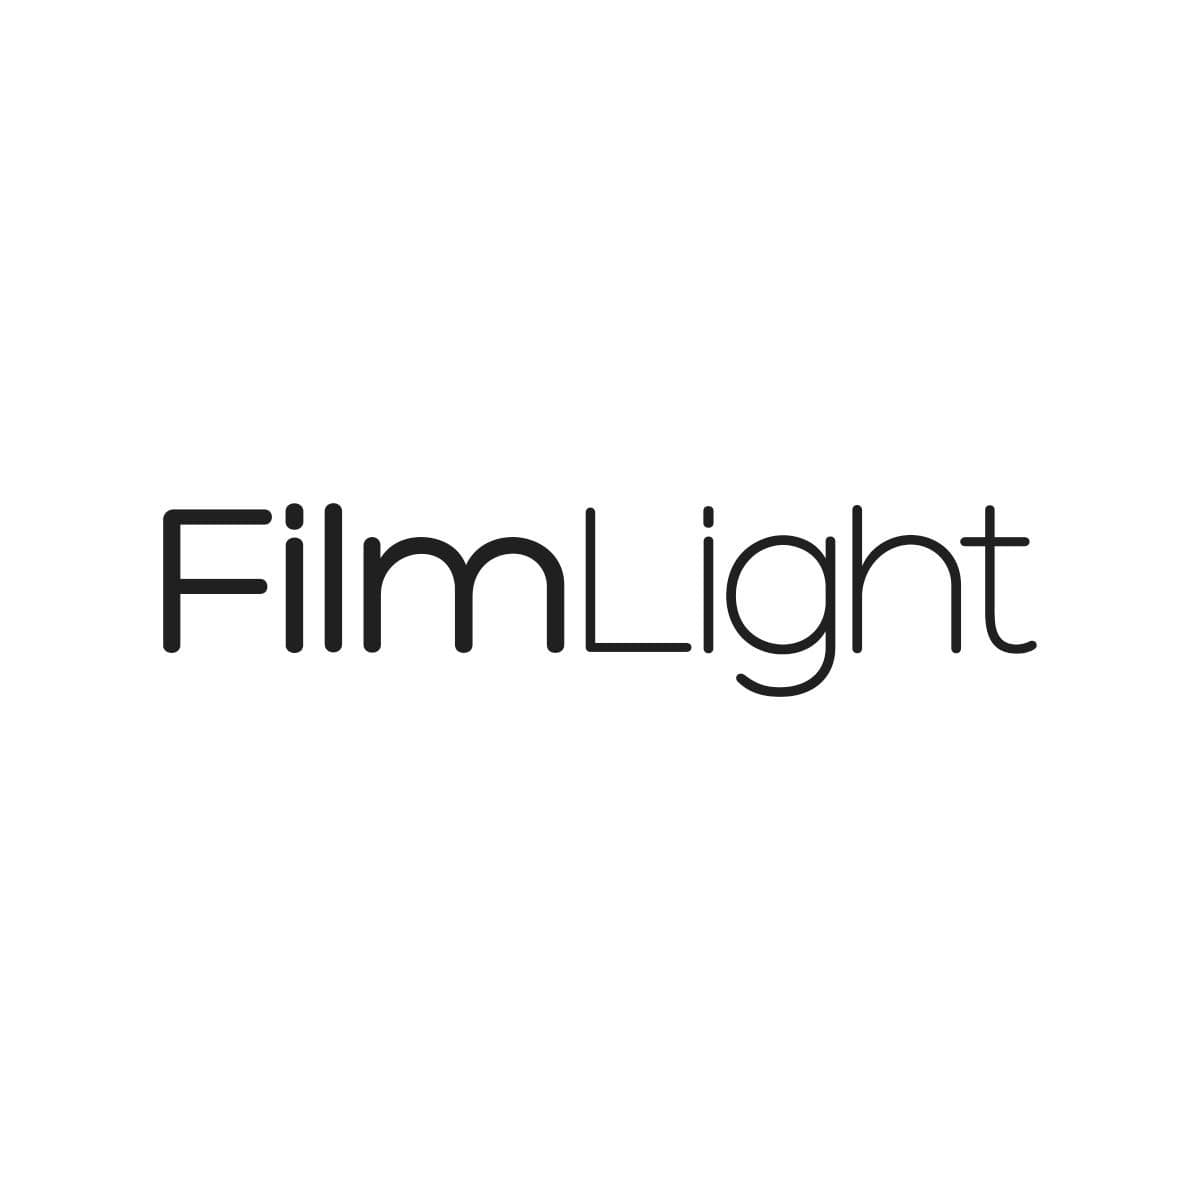 FilmLight logo